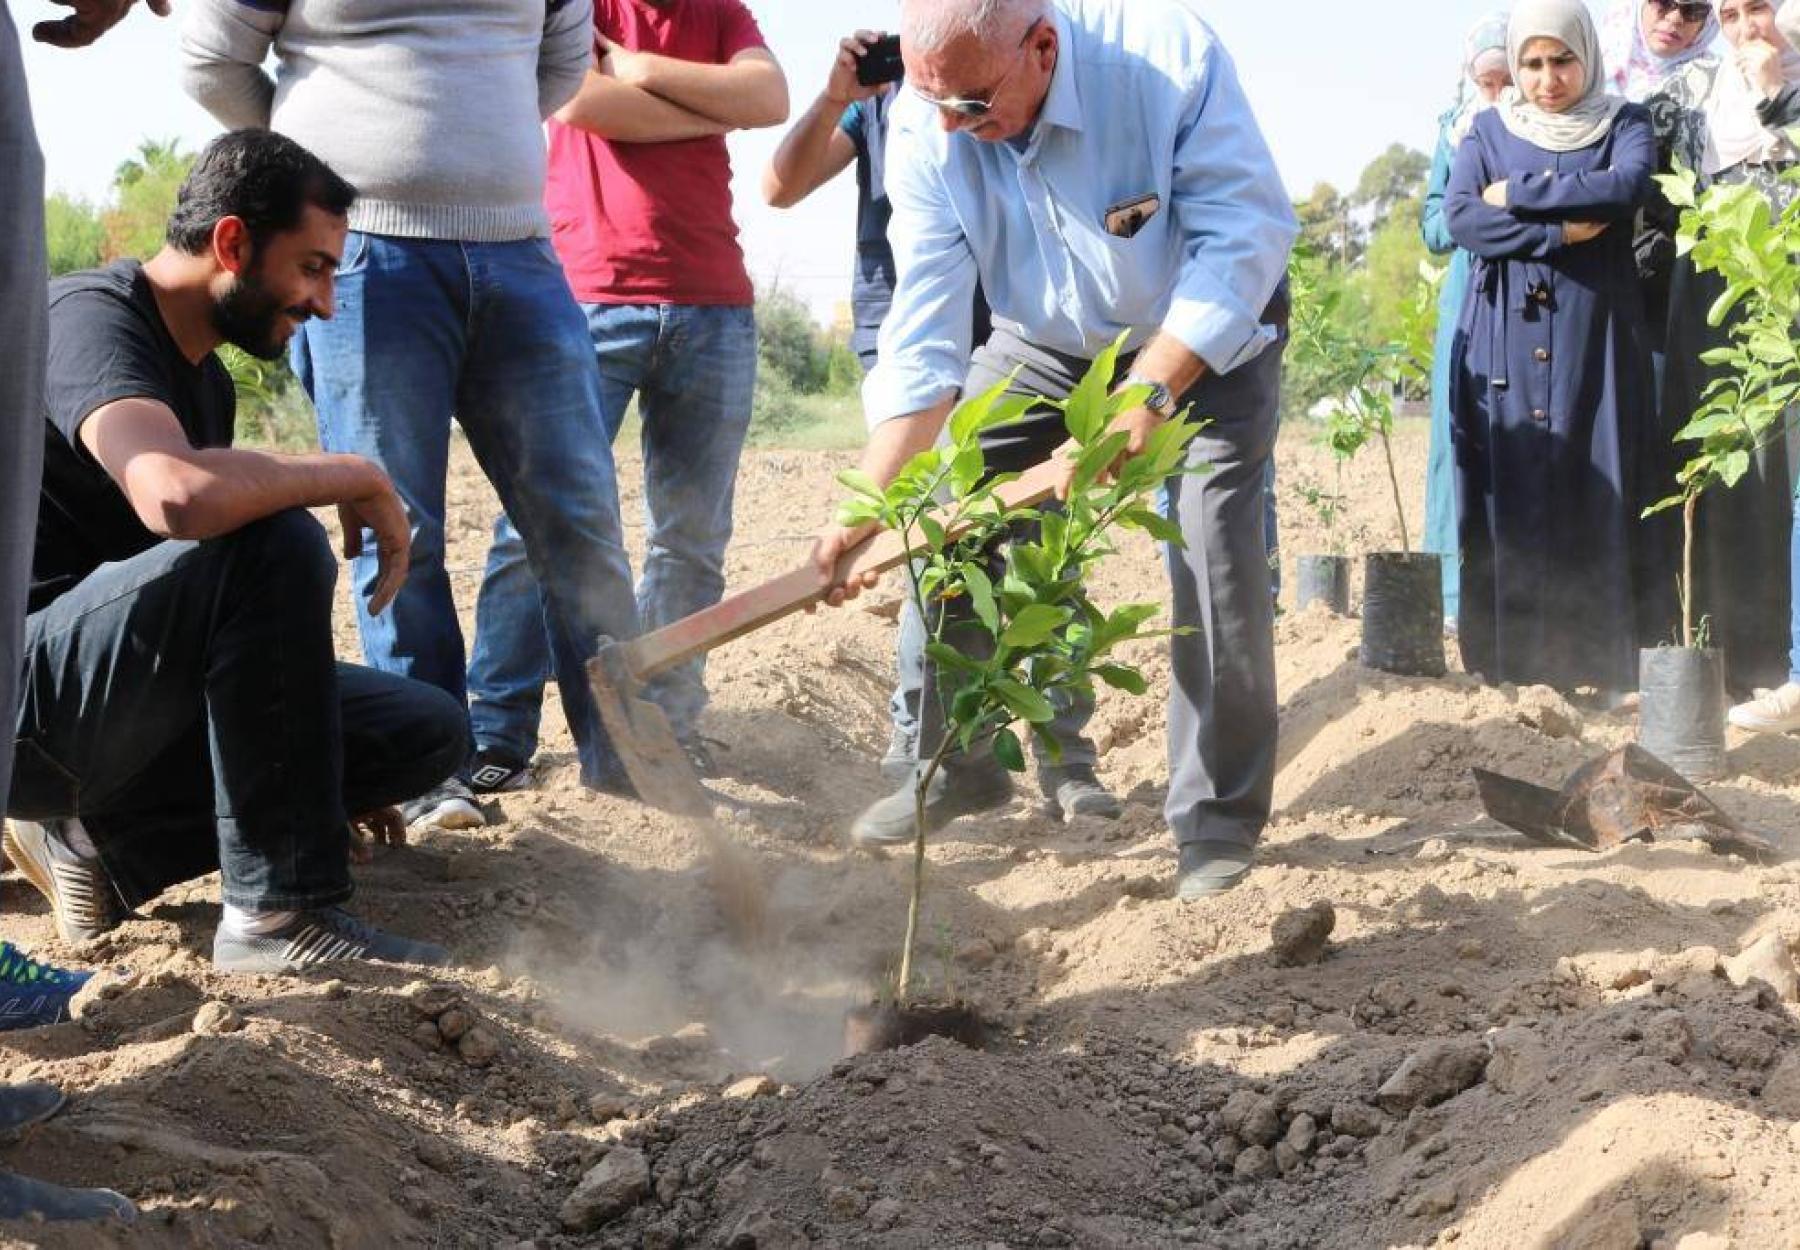 العربية ولجنة المهندسين الشباب يزرعان 400 شجرة في الأغوار الوسطى